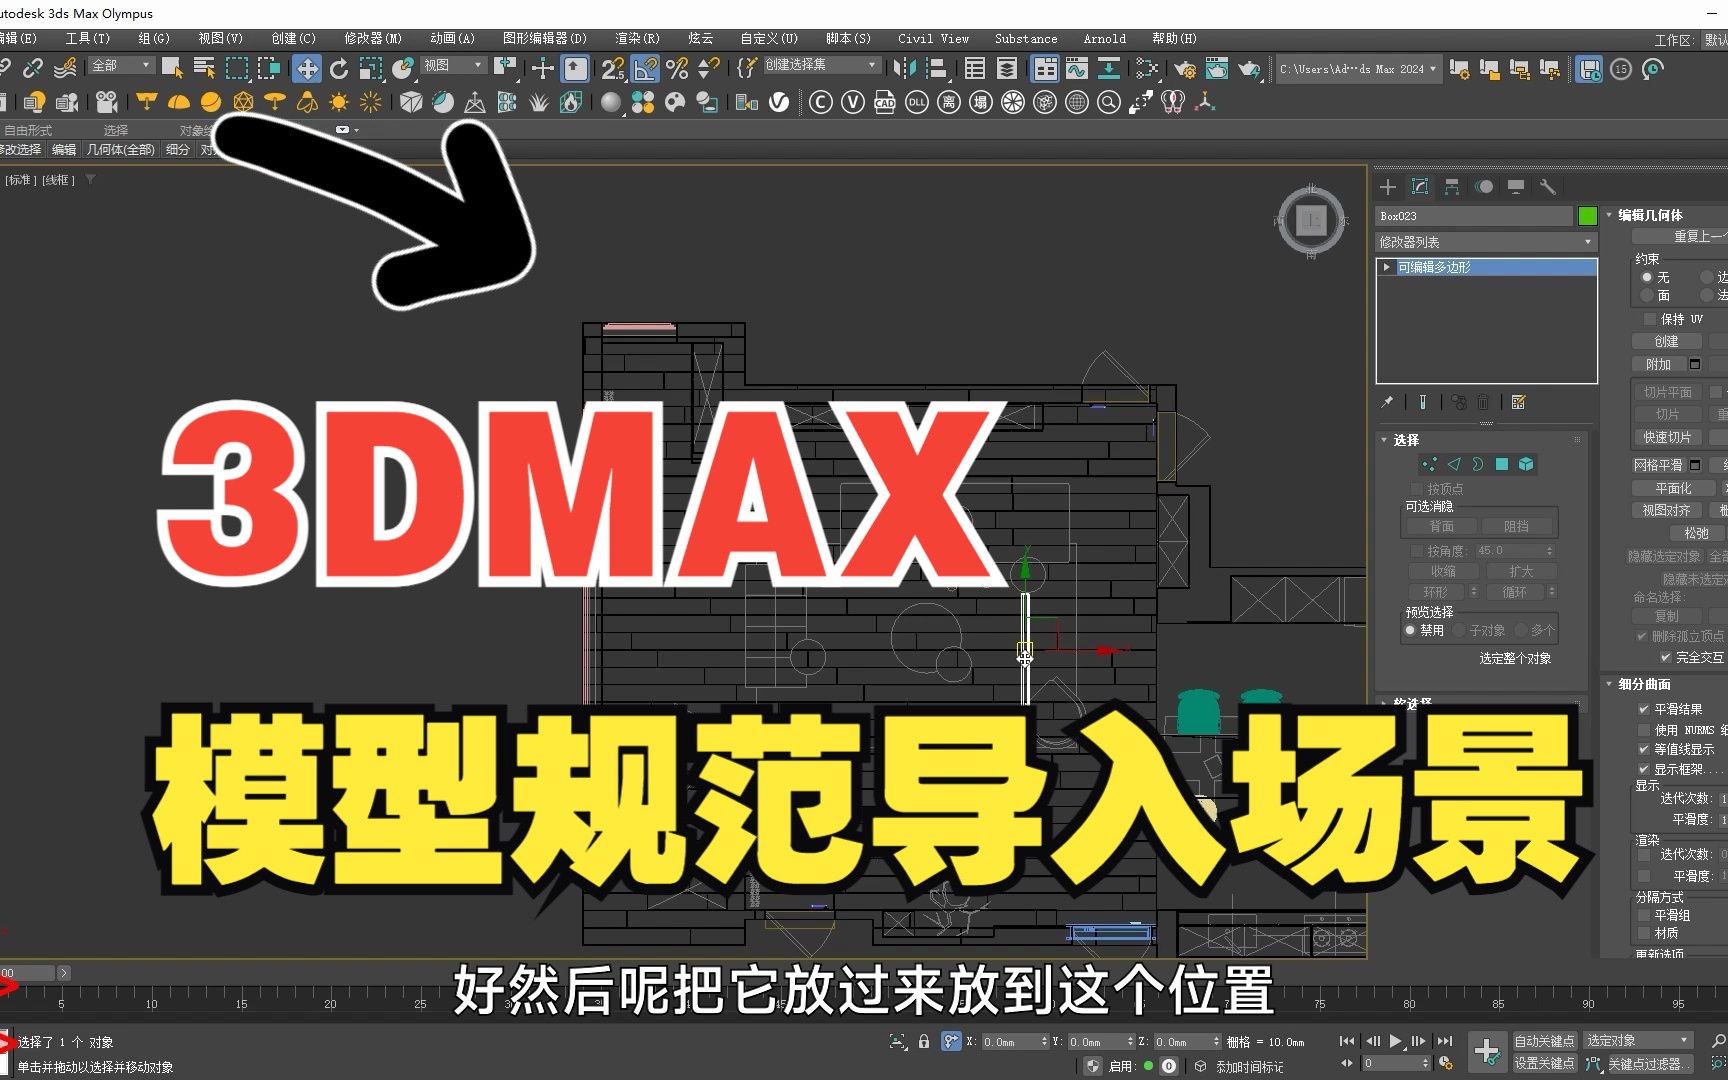 3dmax教程 3d渲染教程 3d建模 3dmax视频教程 室内设计教程 1-教育视频-搜狐视频